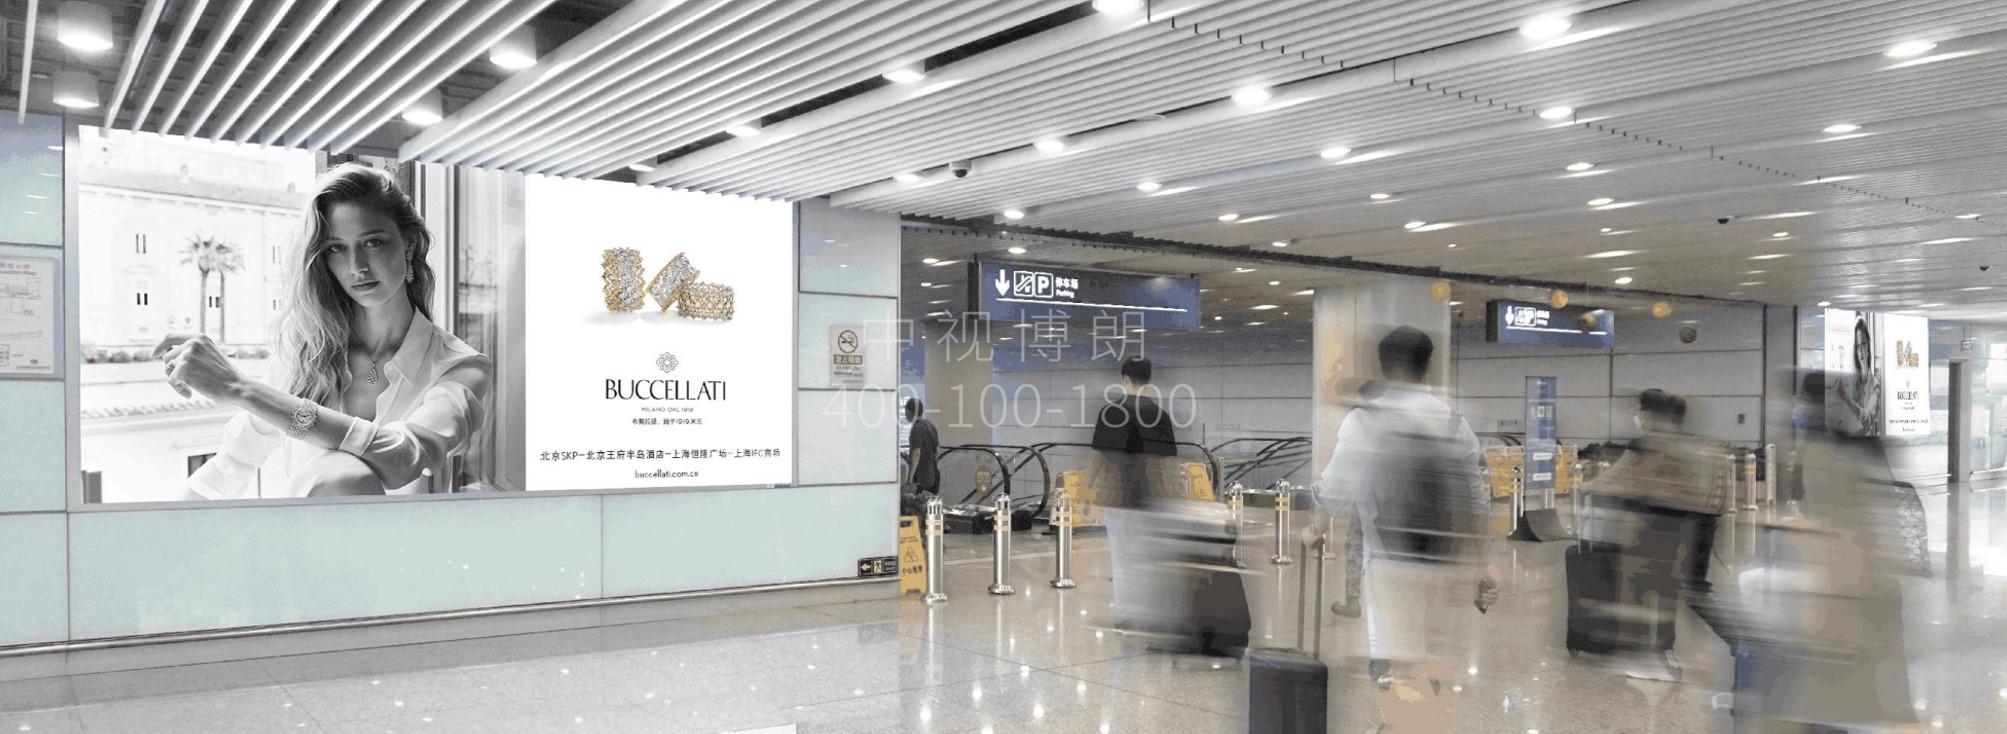 北京首都机场广告-T3 Passenger Flow Convergence Escalator Exit With 5 LED Screens